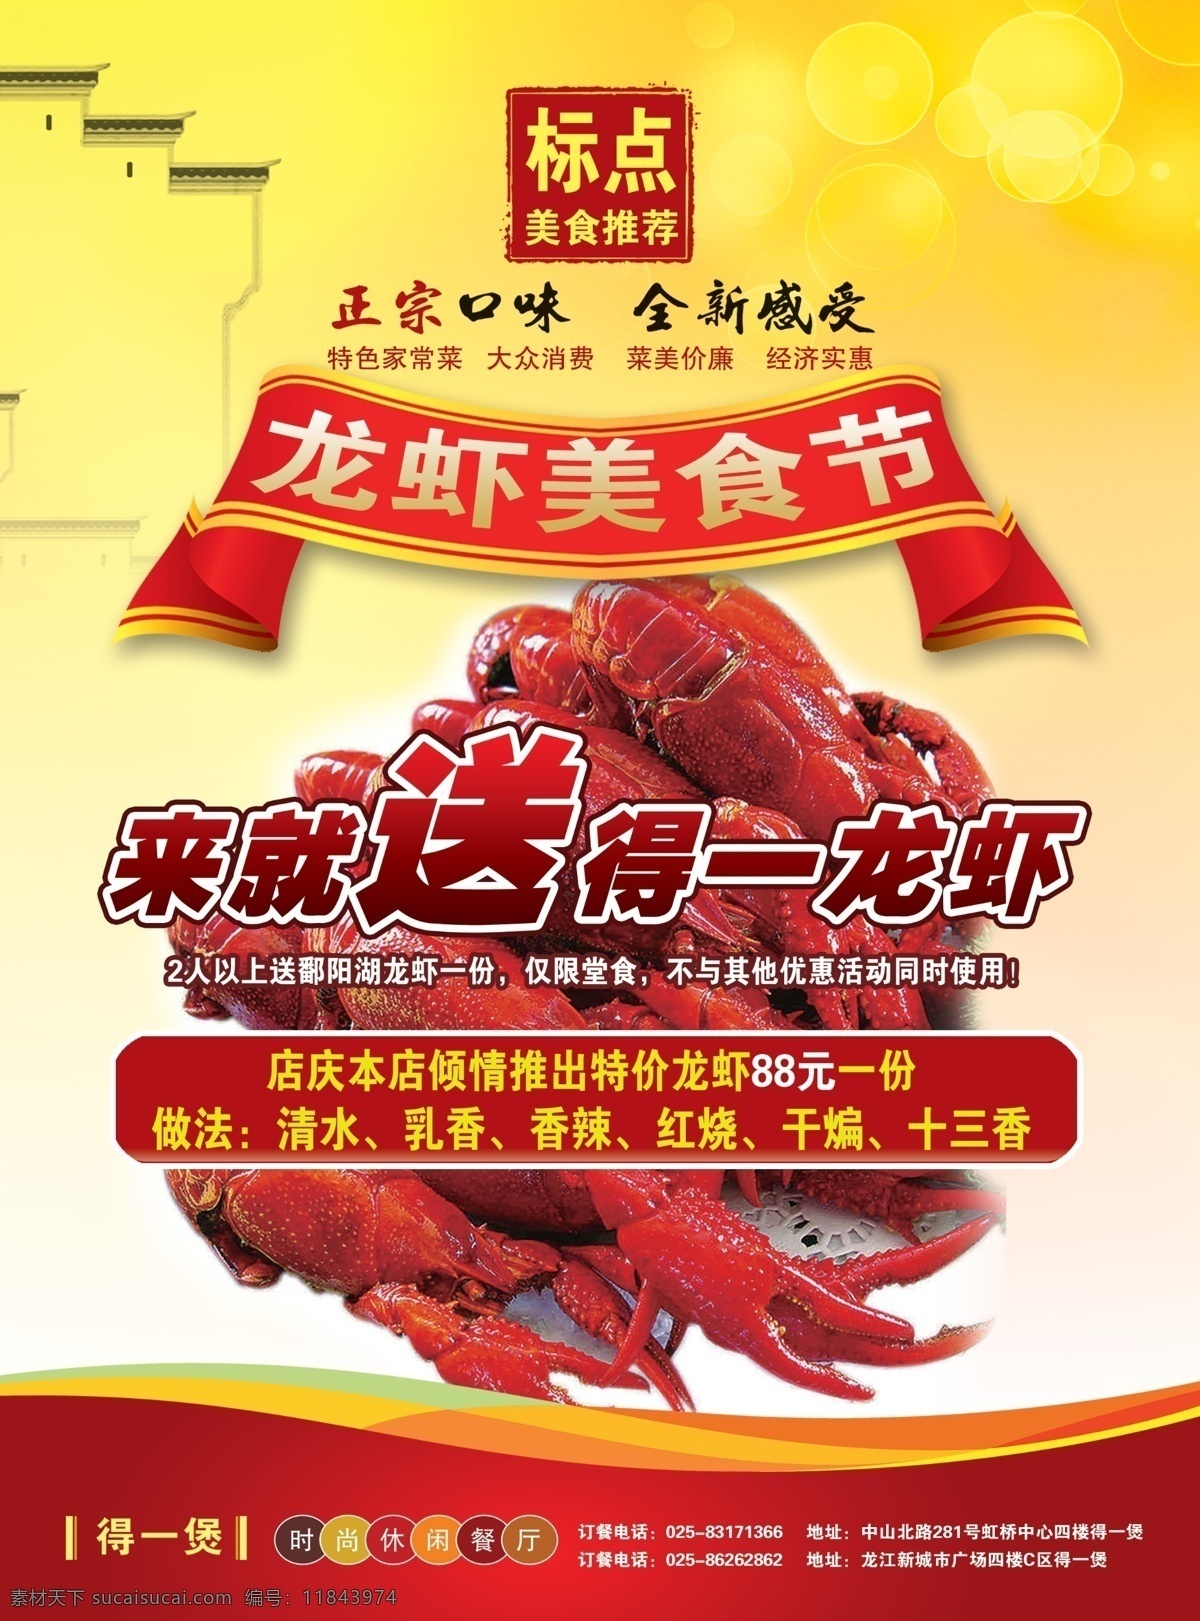 龙虾节dm 美食 龙虾 美食节 标点美食 菜单 促销宣传单 红色飘带 广告设计模板 源文件